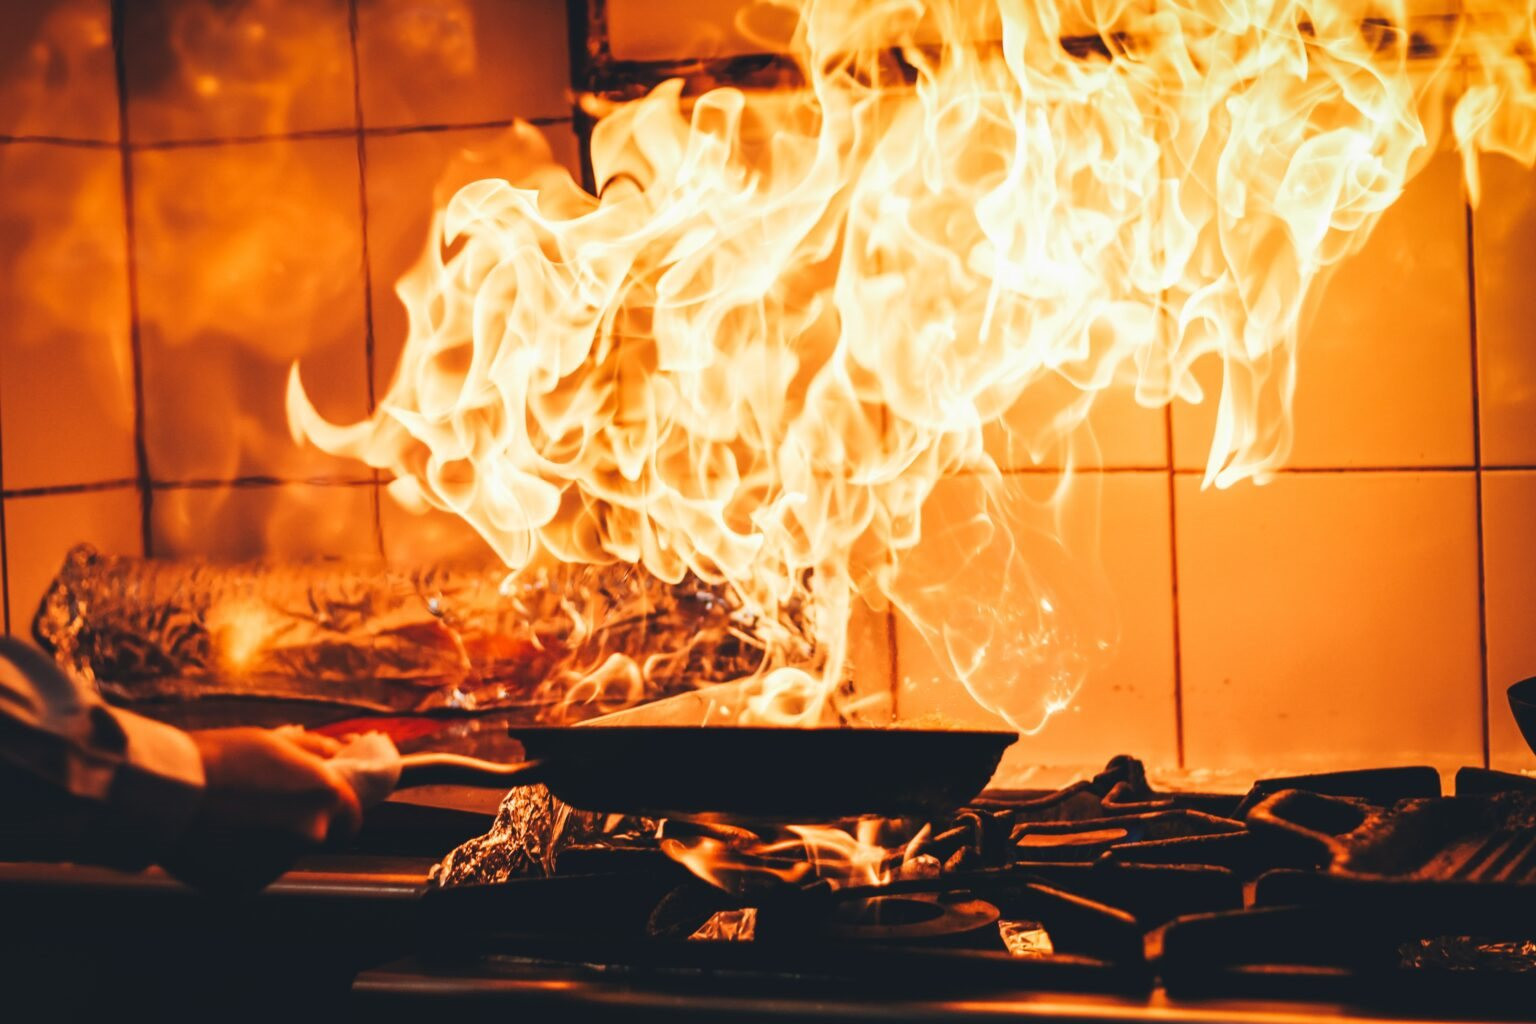 Dầu trong nồi có mùi cháy khét trong lúc nấu ăn, đừng vội làm điều này kẻo gia đình gặp họa- Ảnh 6.